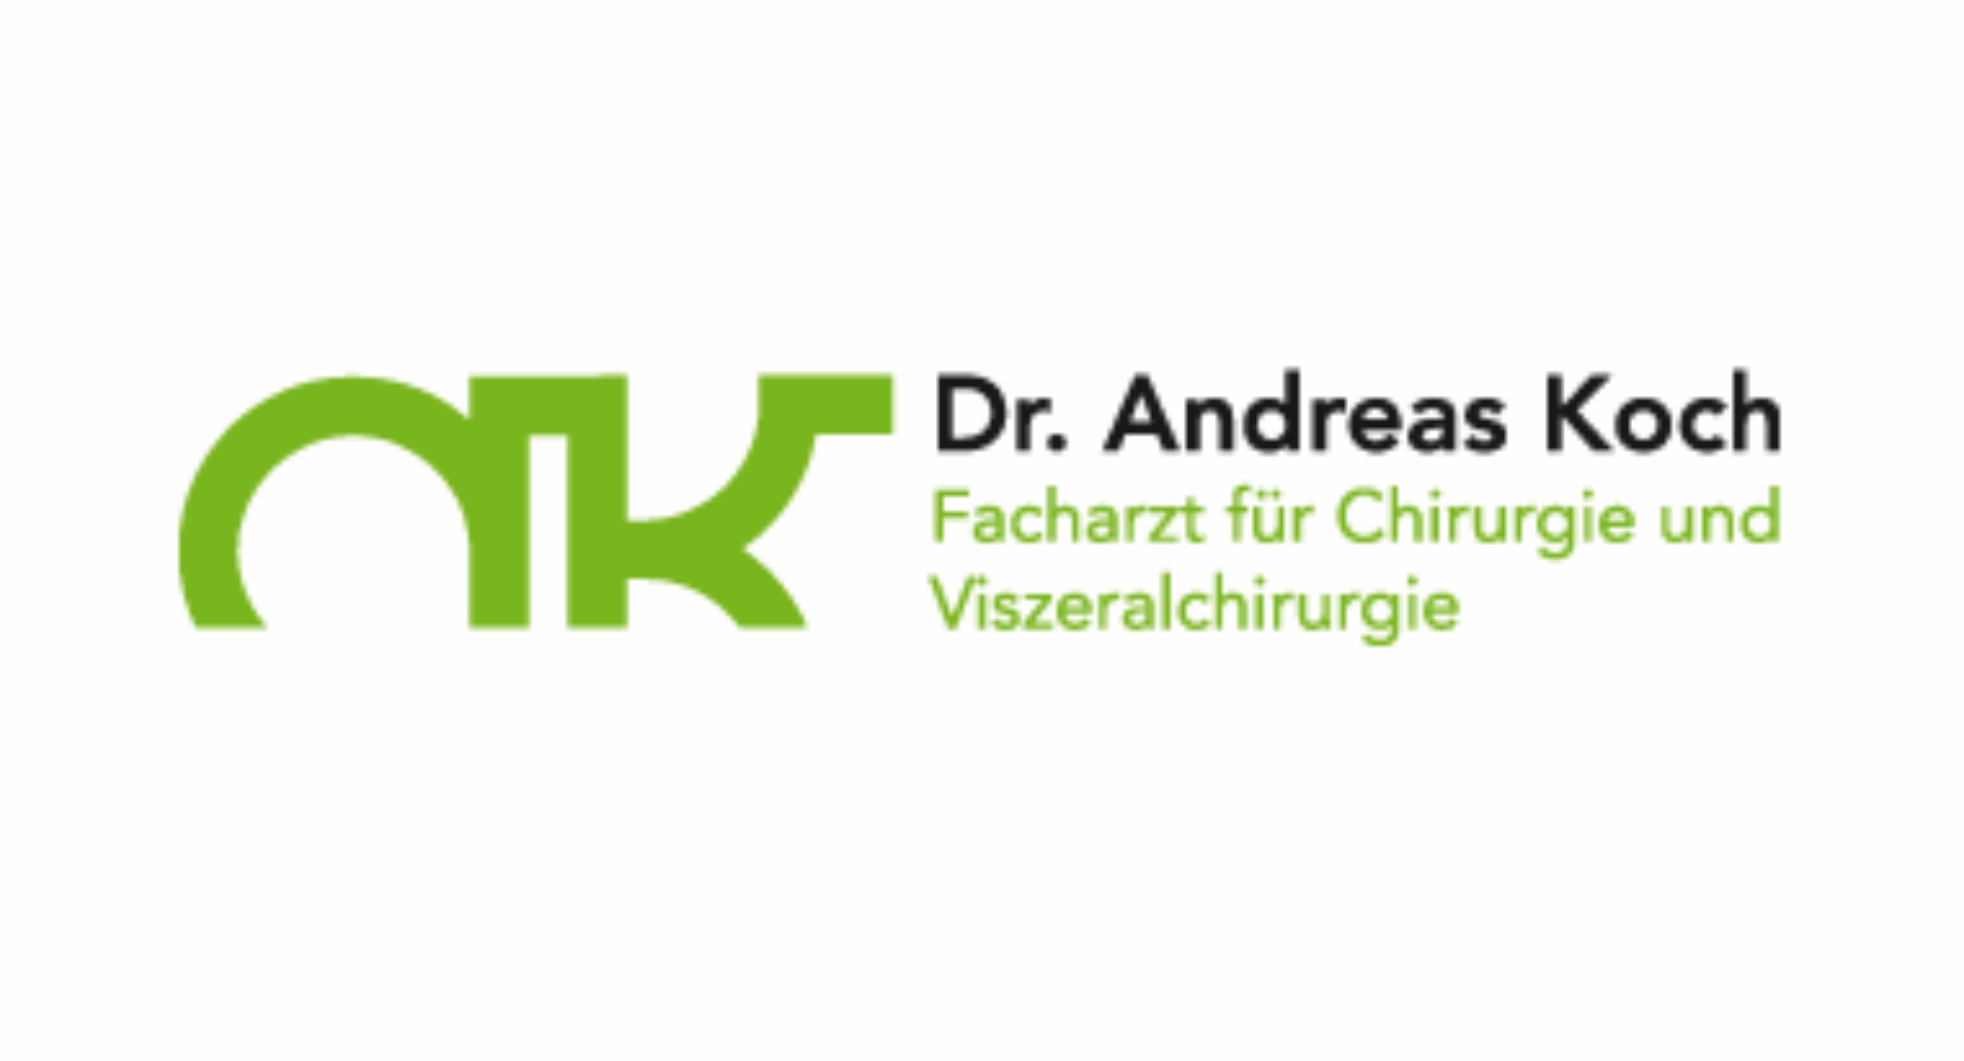 Dr. Andreas Koch